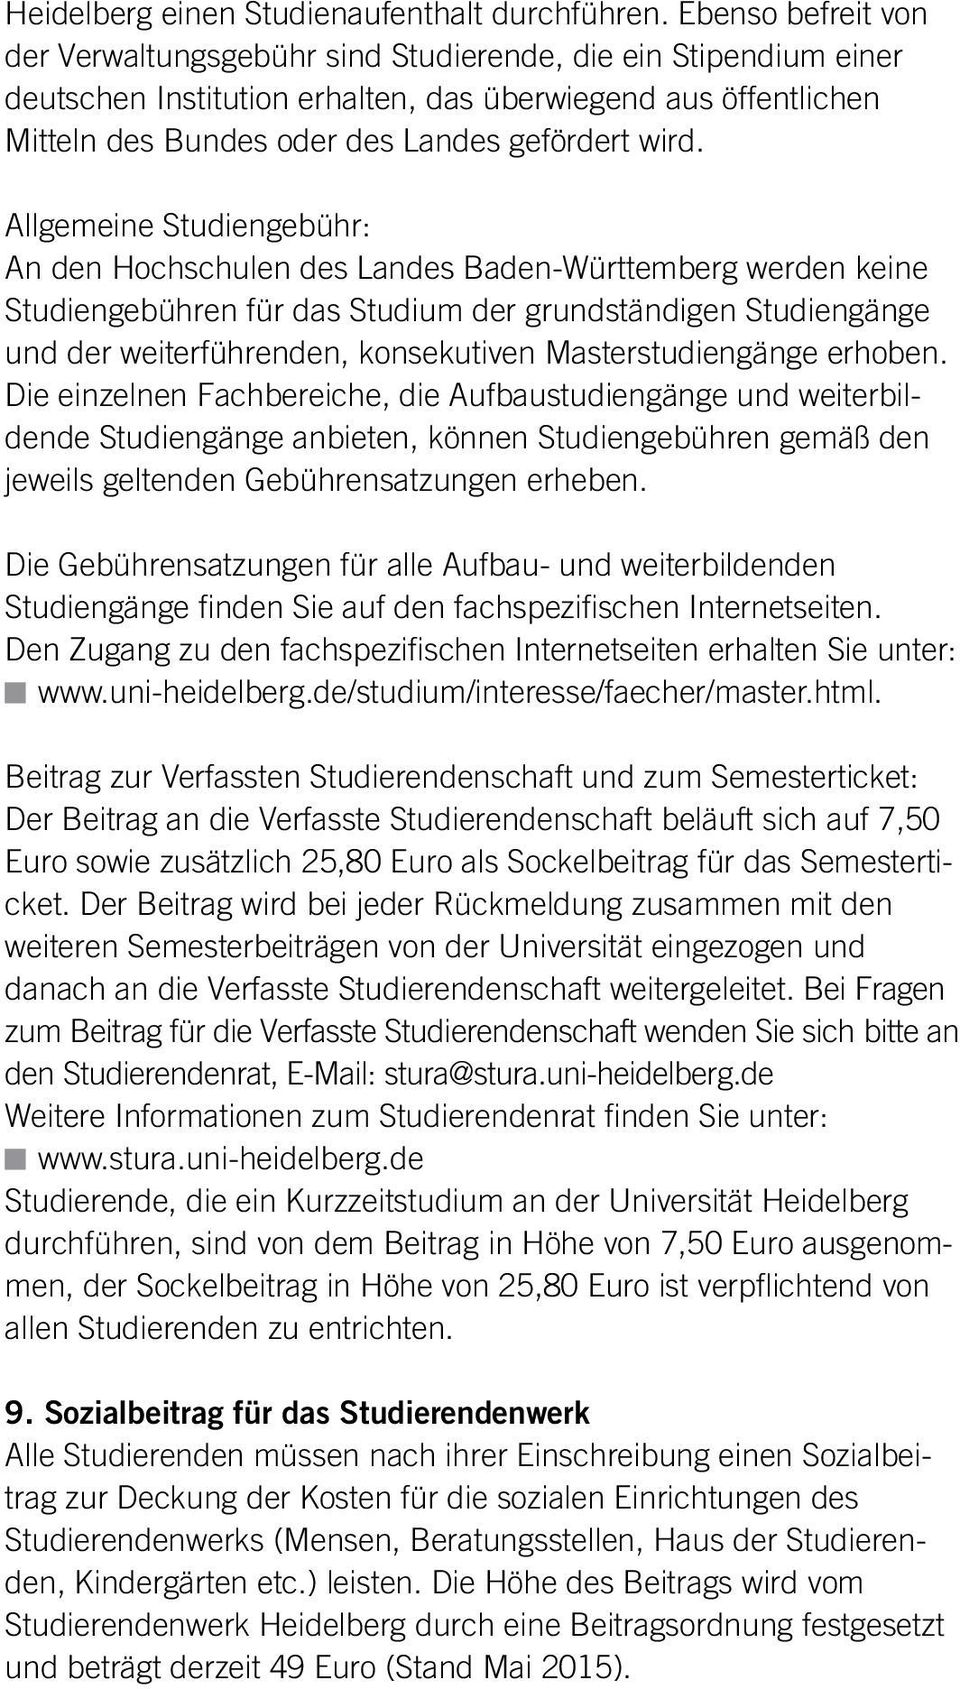 Allgemeine Studiengebühr: An den Hochschulen des Landes Baden-Württemberg werden keine Studiengebühren für das Studium der grundständigen Studiengänge und der weiterführenden, konsekutiven